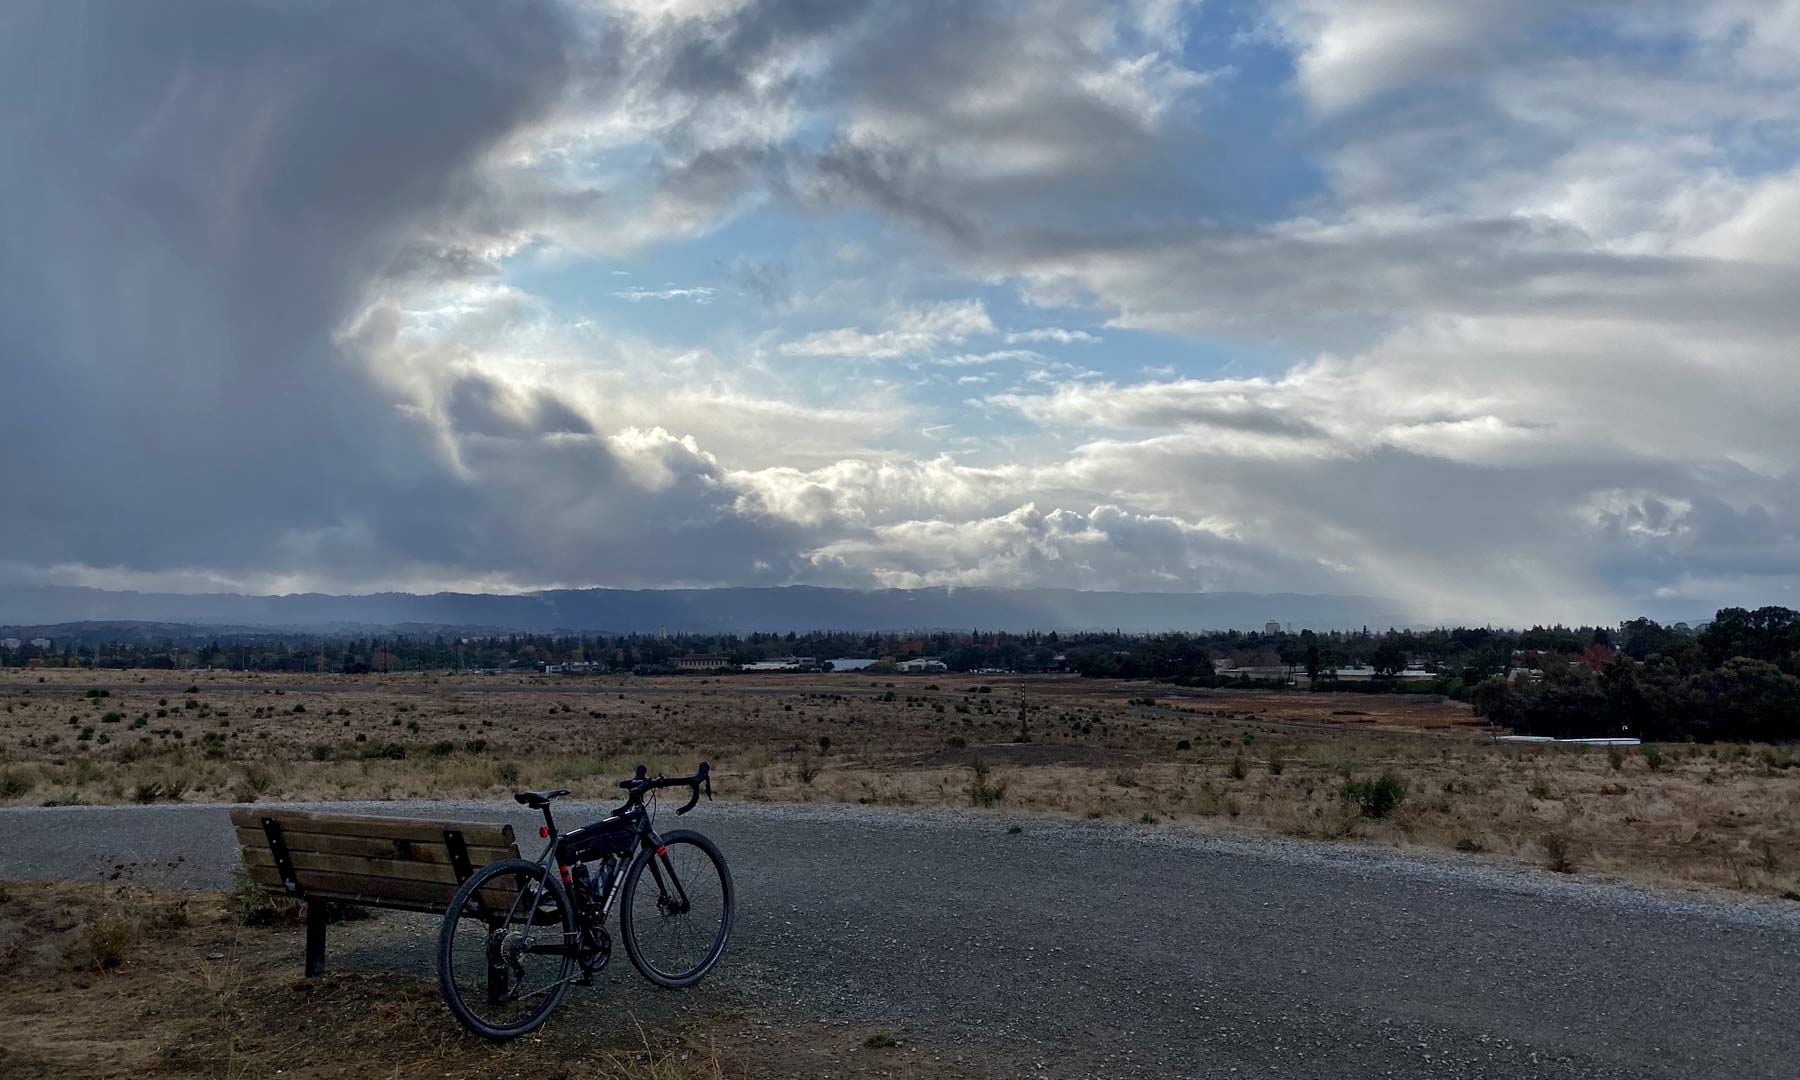 Mid-ride rain clouds over Palo Alto, CA